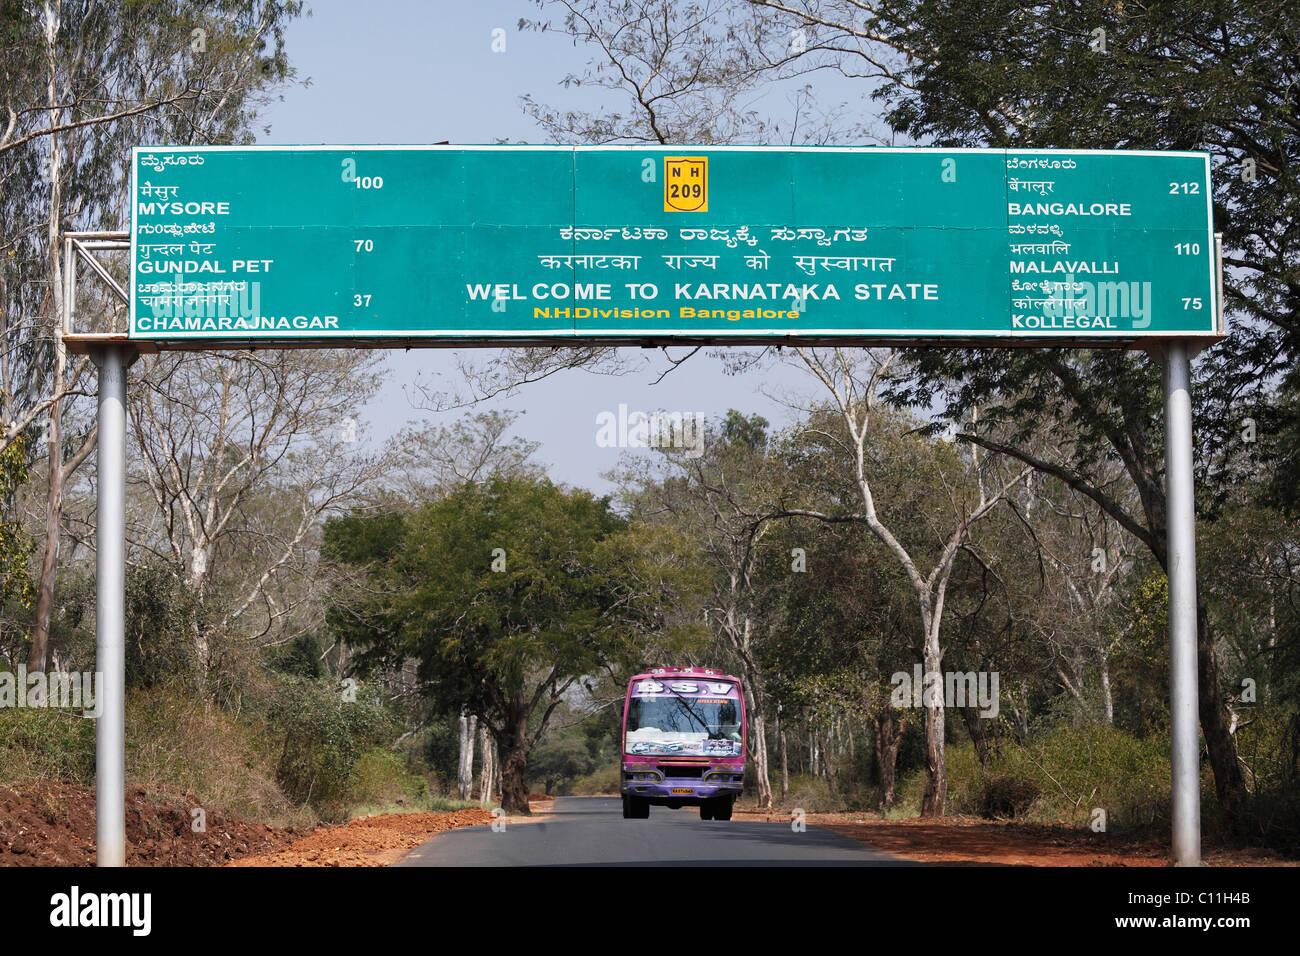 Grenze zu Karnataka Zustand, unterzeichnen in drei Sprachen, Kannada, Tamil und Englisch, Südindien, Indien, Südasien, Asien Stockfoto